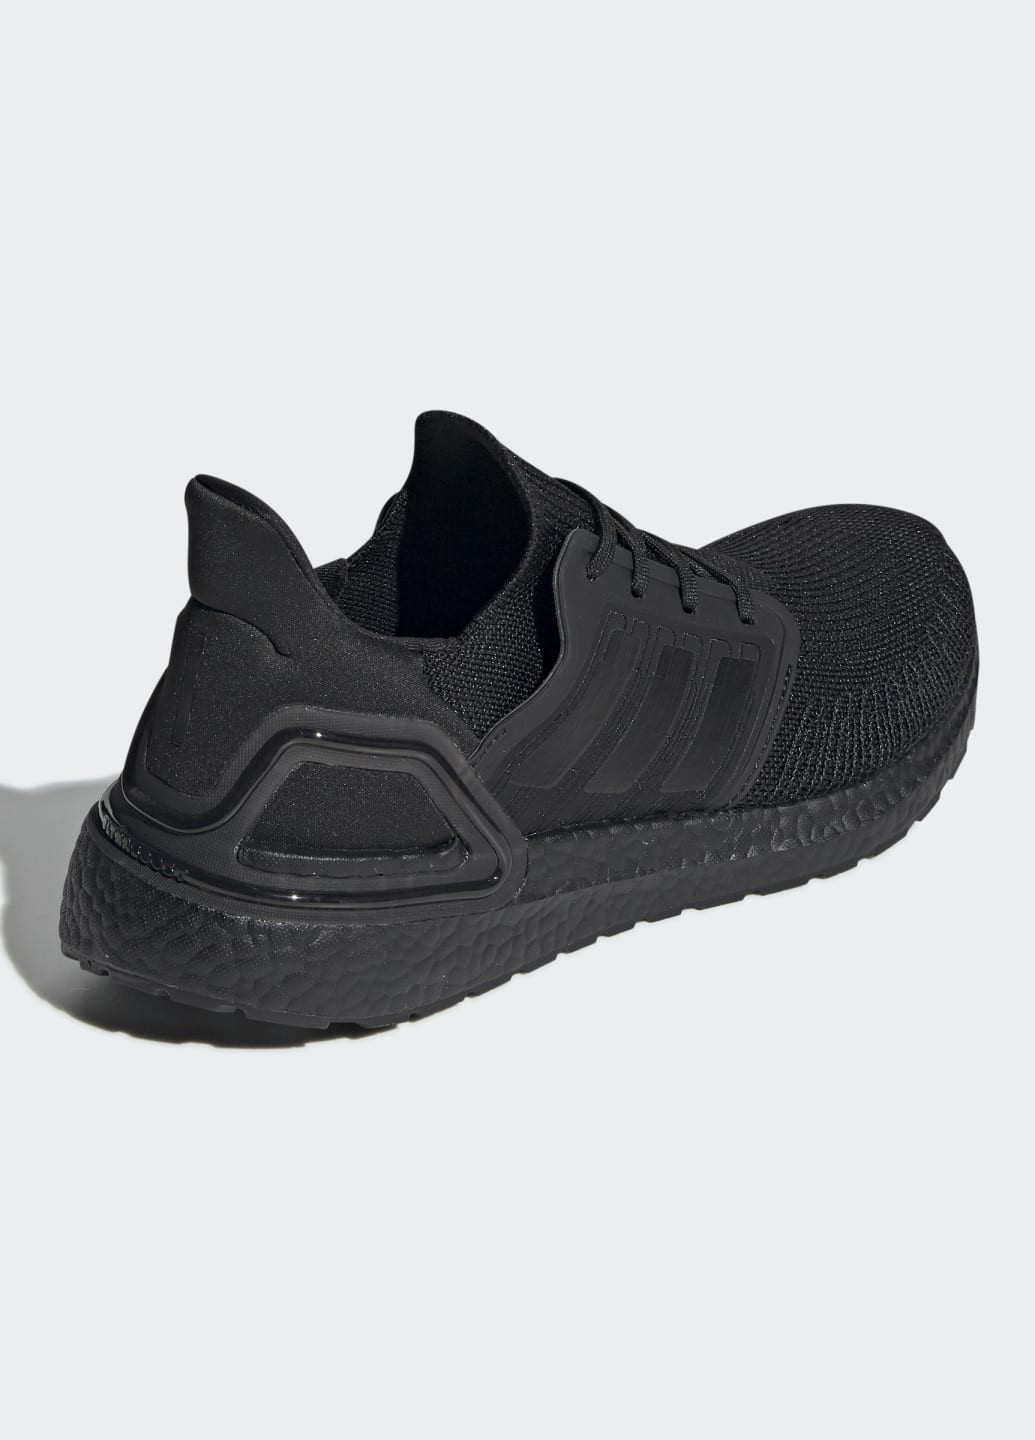 Черные всесезонные кроссовки для бега ultraboost 20 adidas